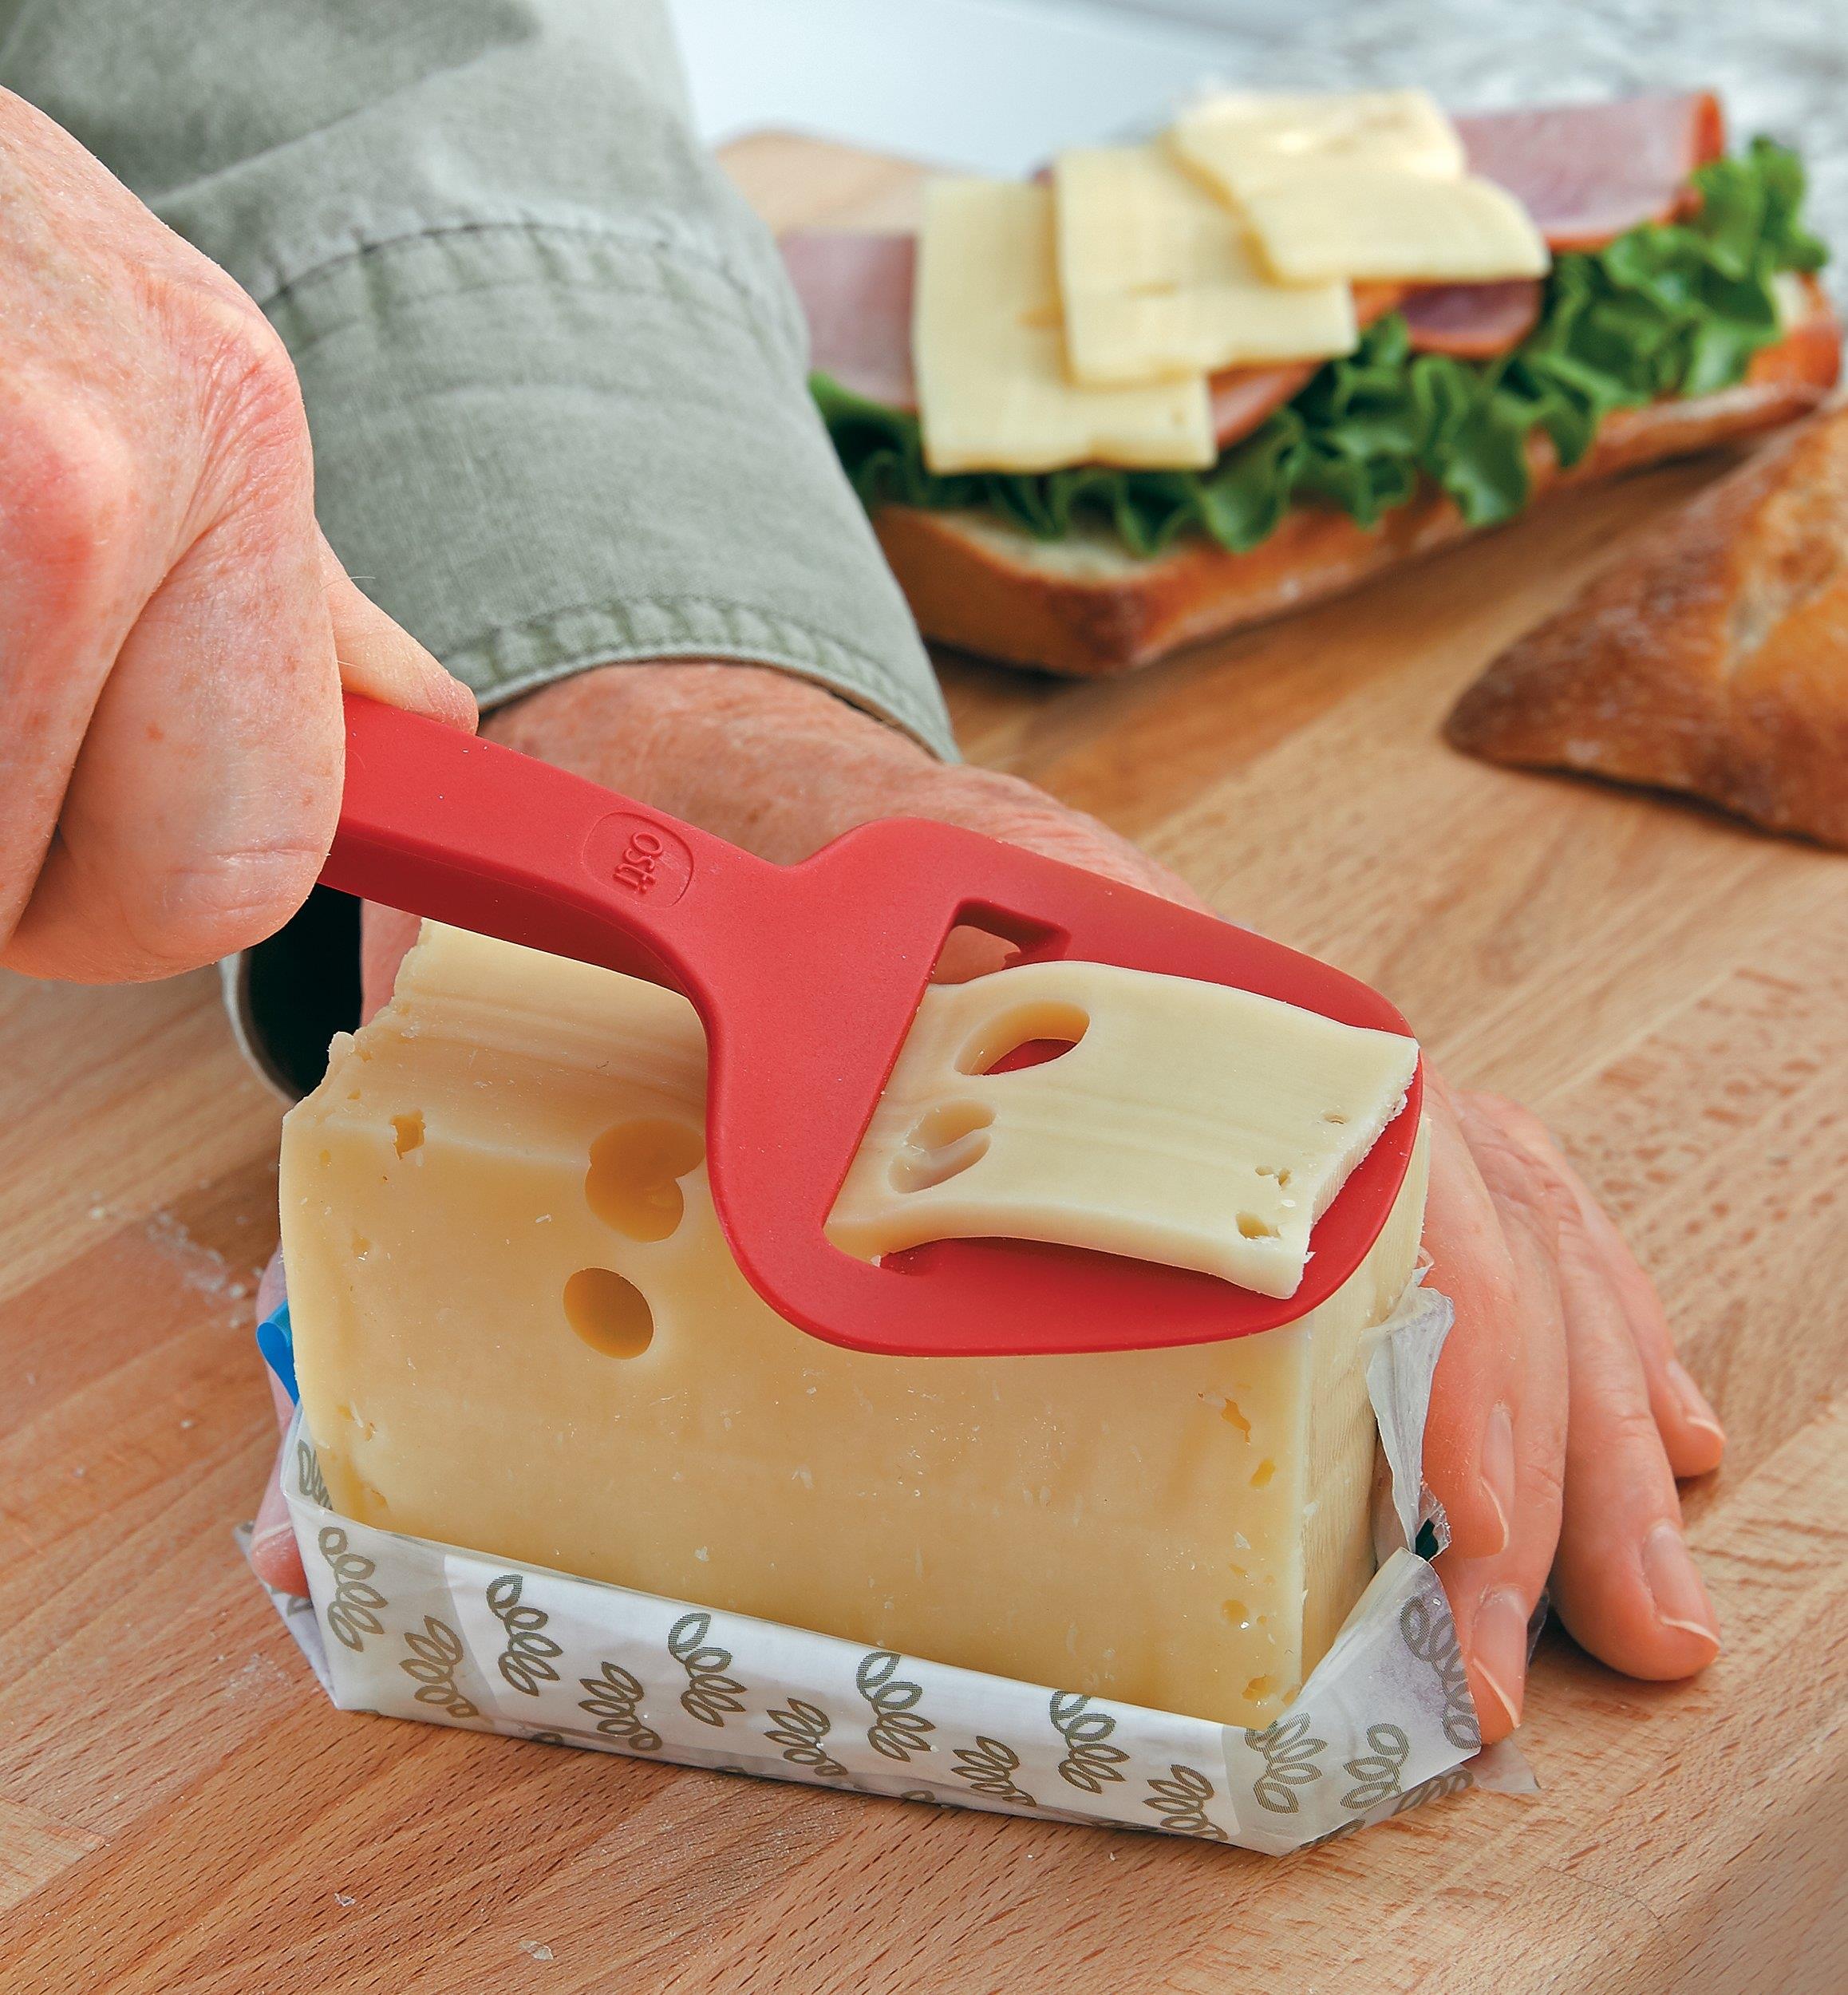 Avec plateau de service Gobesty Coupe-fromage en acier inoxydable Beurre à saucisse Pour fromages durs et semi-durs 